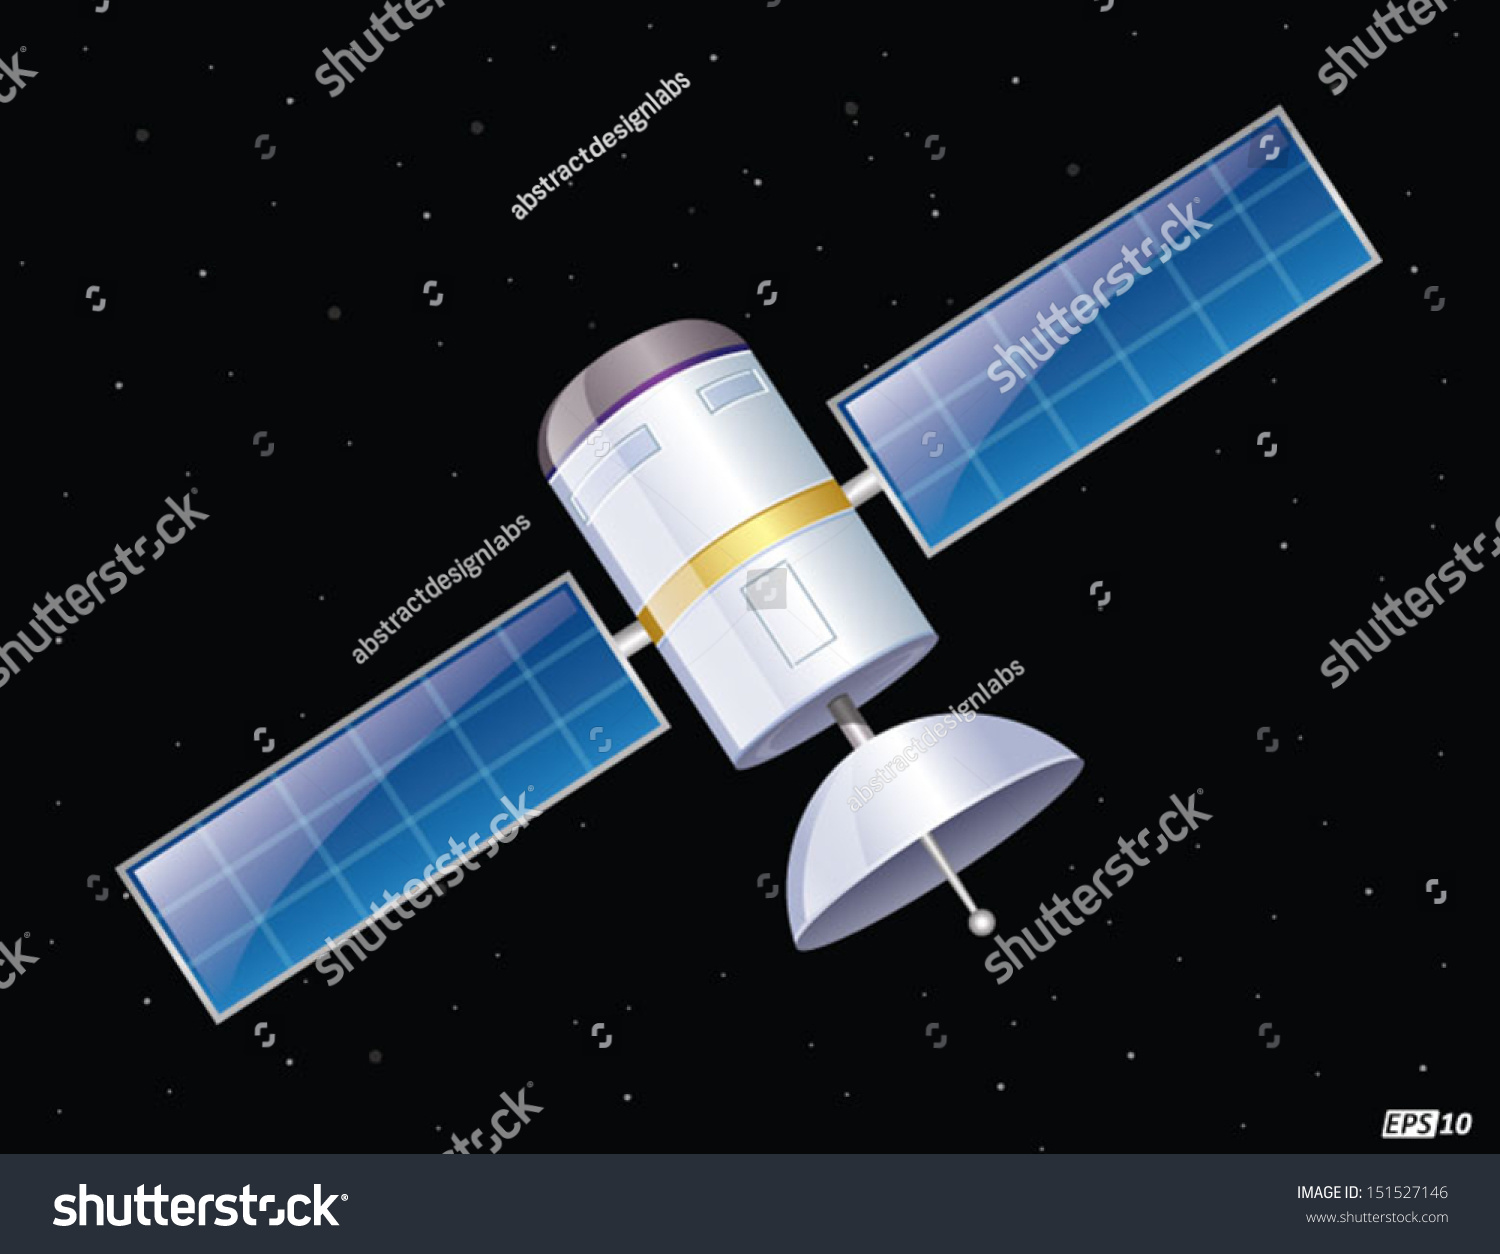 stock-vector-satellite-in-space-15152714